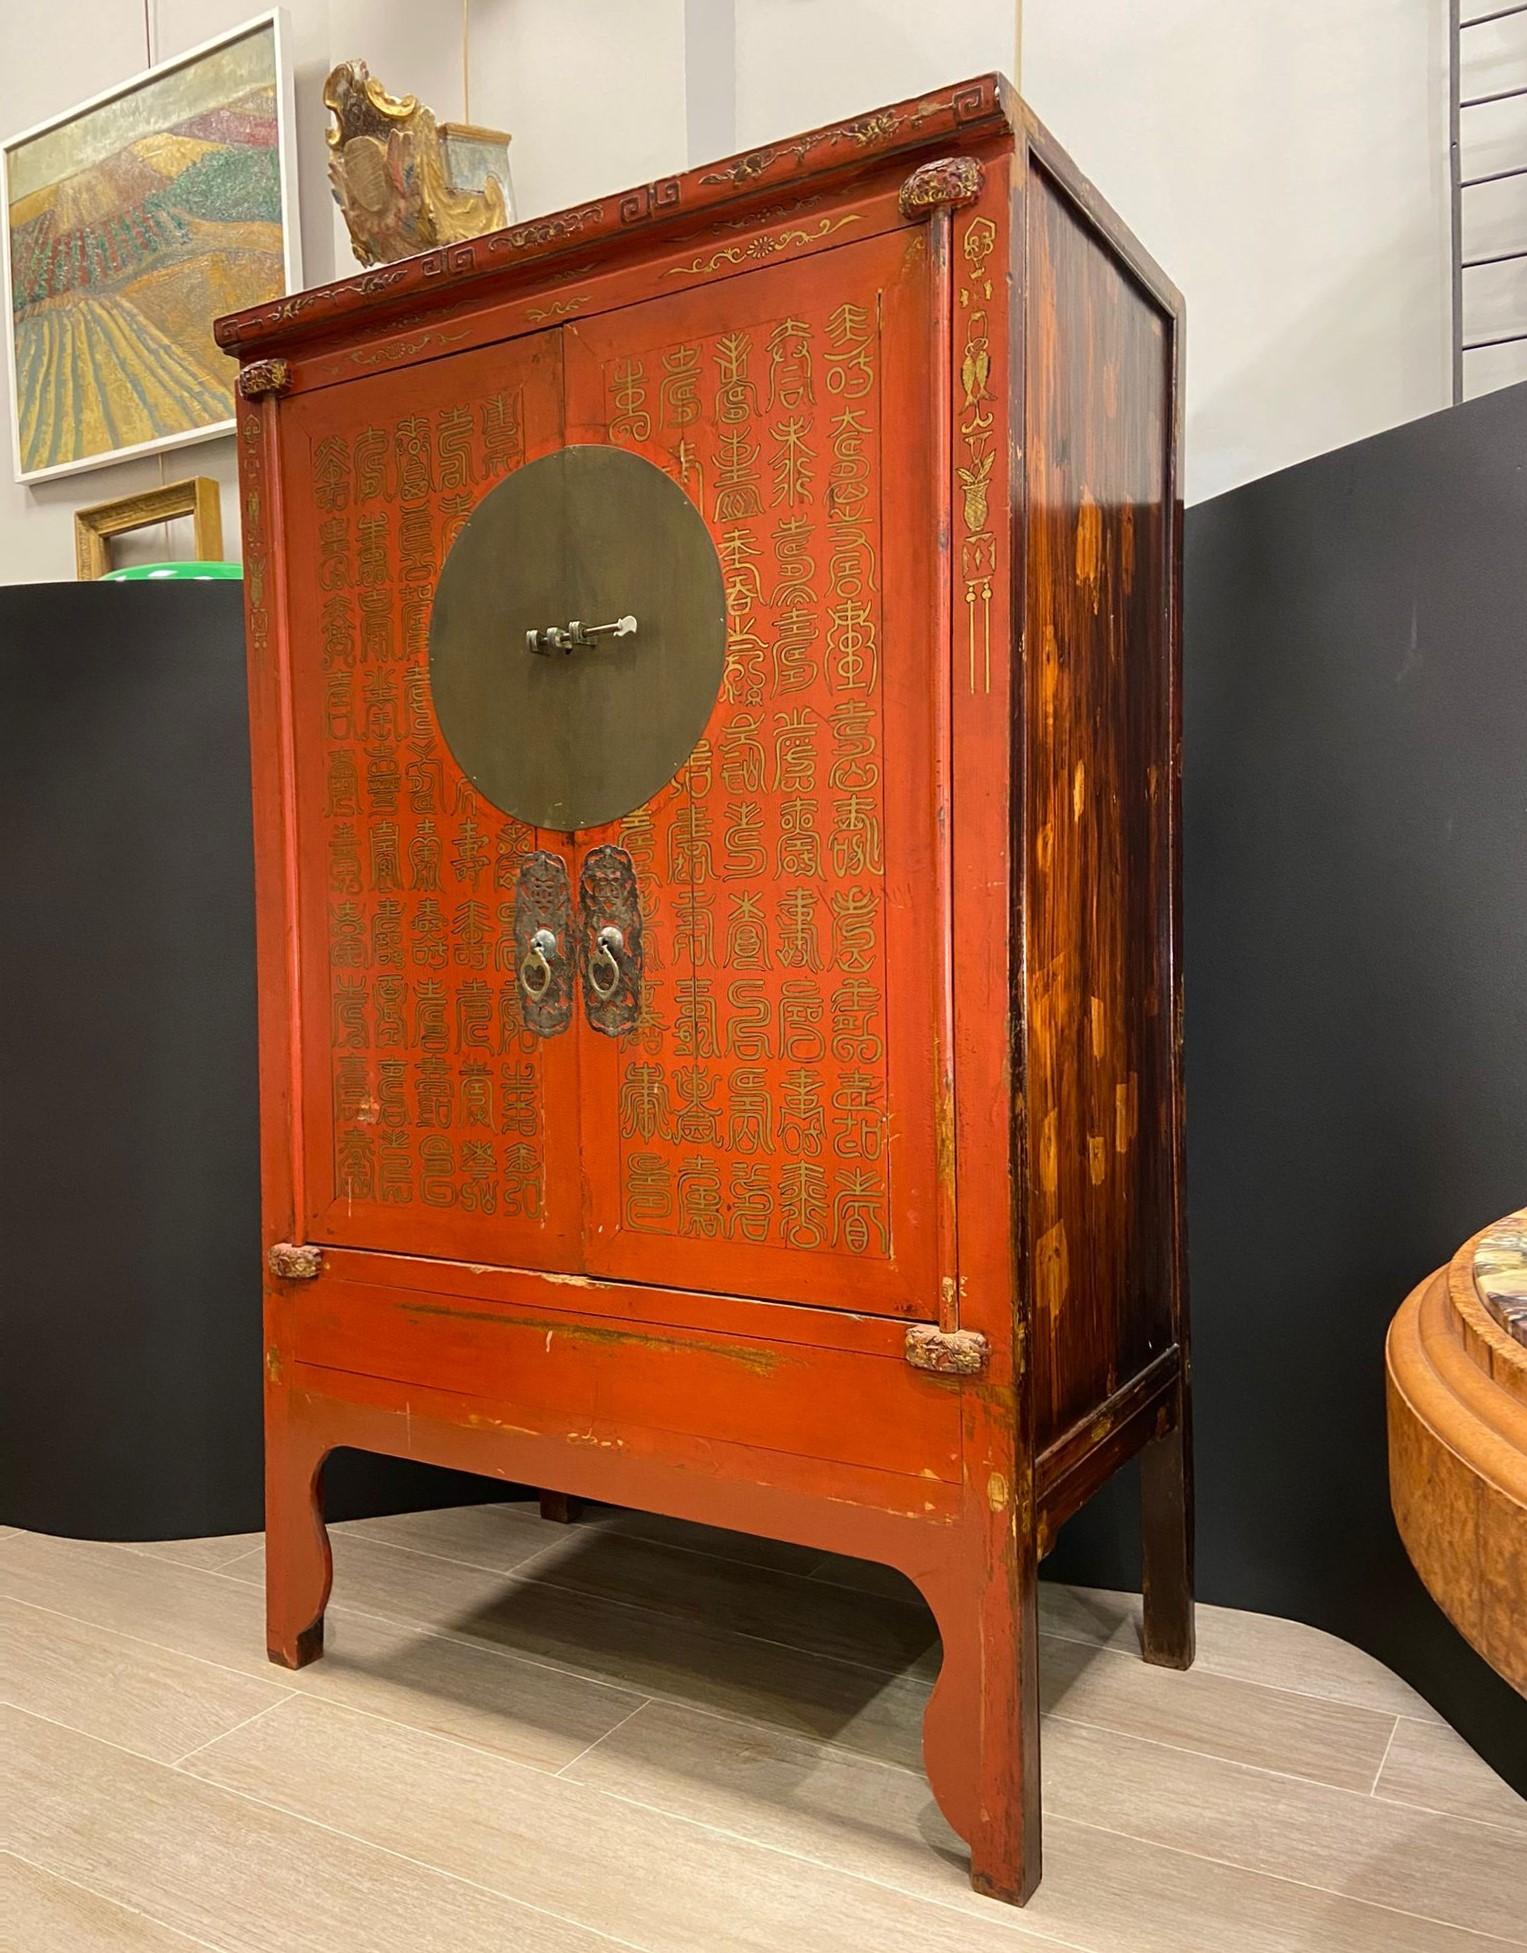 Magnifique cabinet chinois réalisé vers 1900 en bois d'orme laqué rouge, et décoré à la main à la poudre d'or. Les ferrures et le trou de serrure sont en fer d'origine de l'époque. Ce magnifique meuble possède également un ornement sculpté dans le